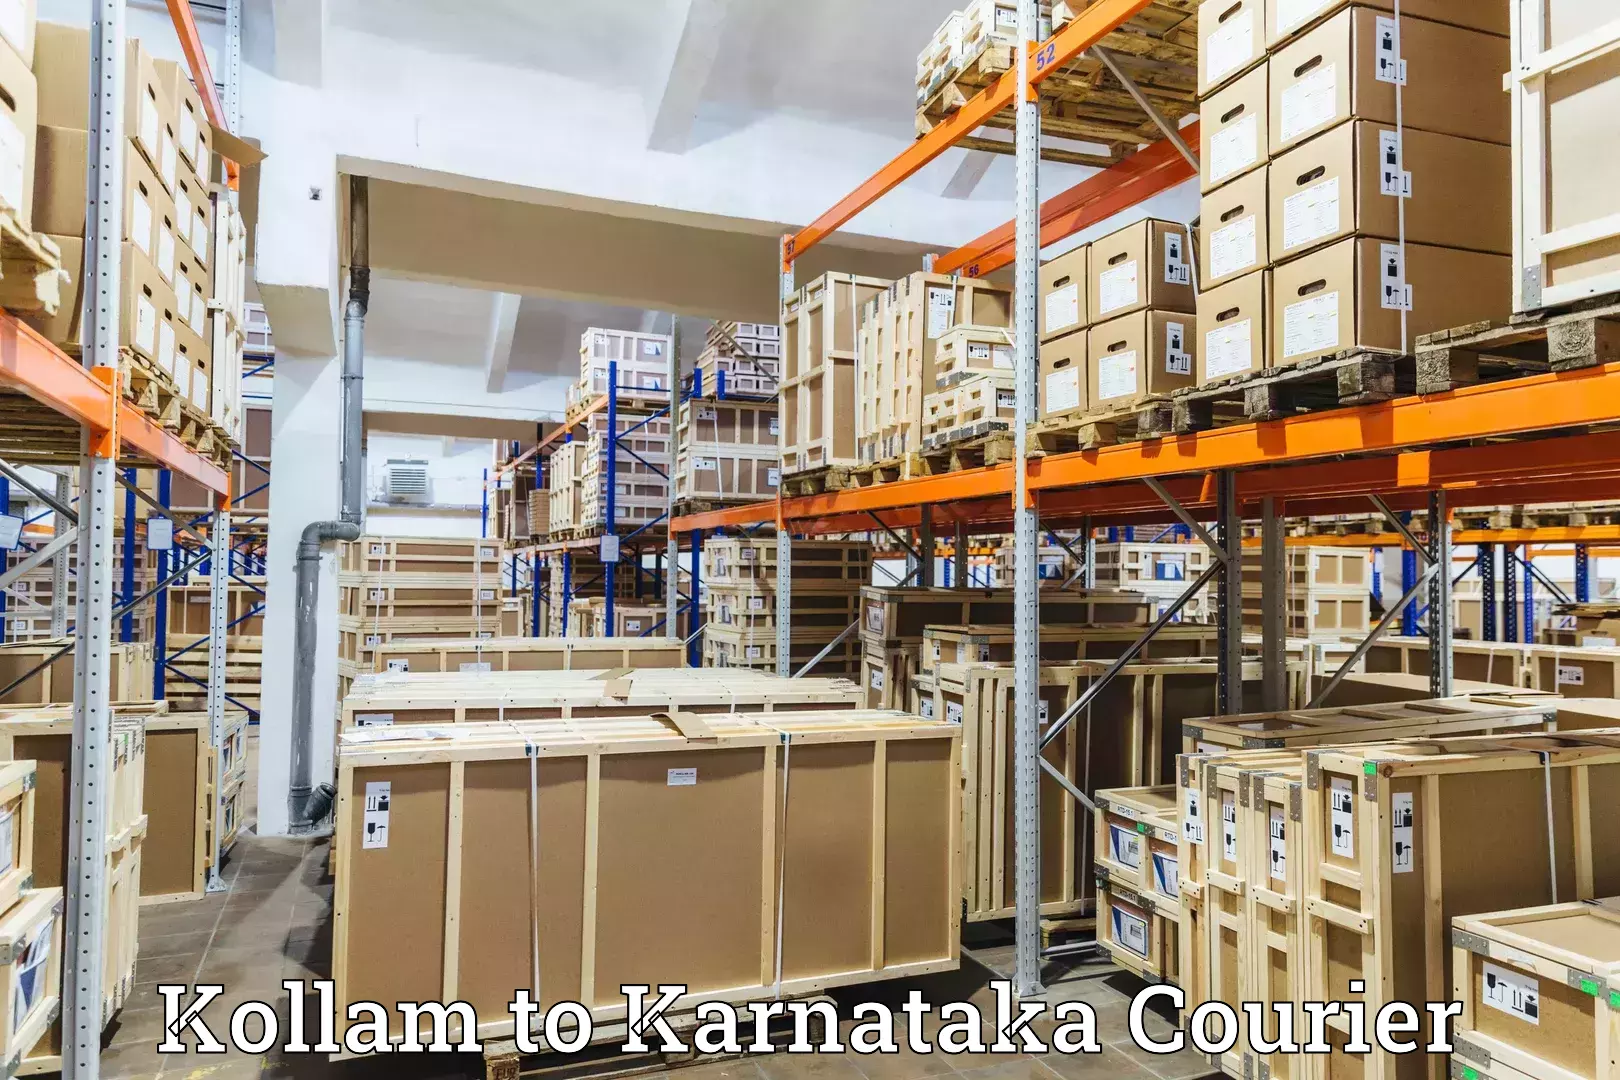 Express package handling Kollam to Kalaburagi